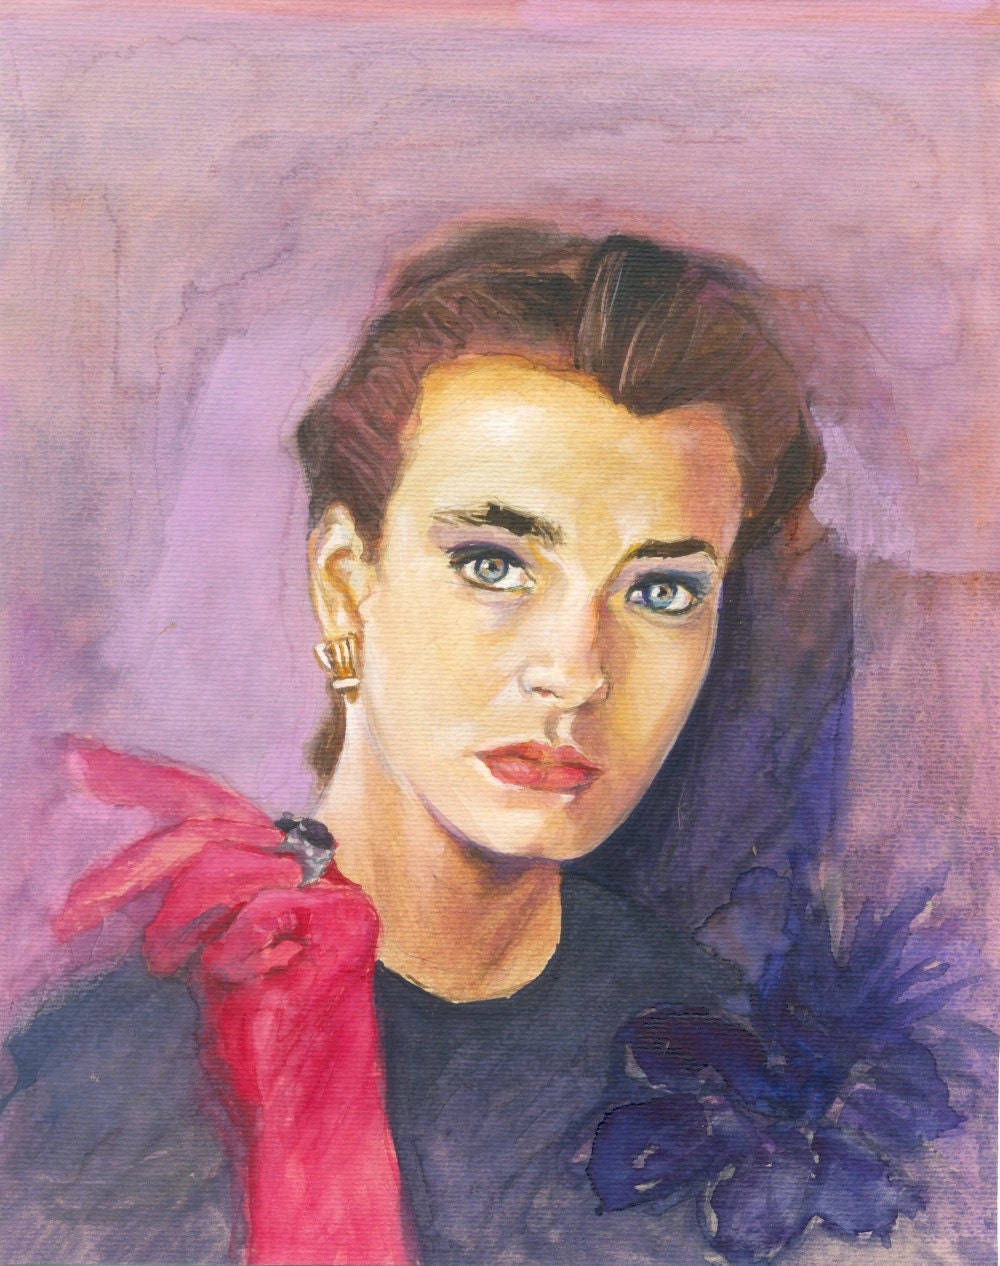 Portrait Painting - Lavender Girl - original gouache painting- Fine Art - portrait- purple pink - OhLaLaGalerie